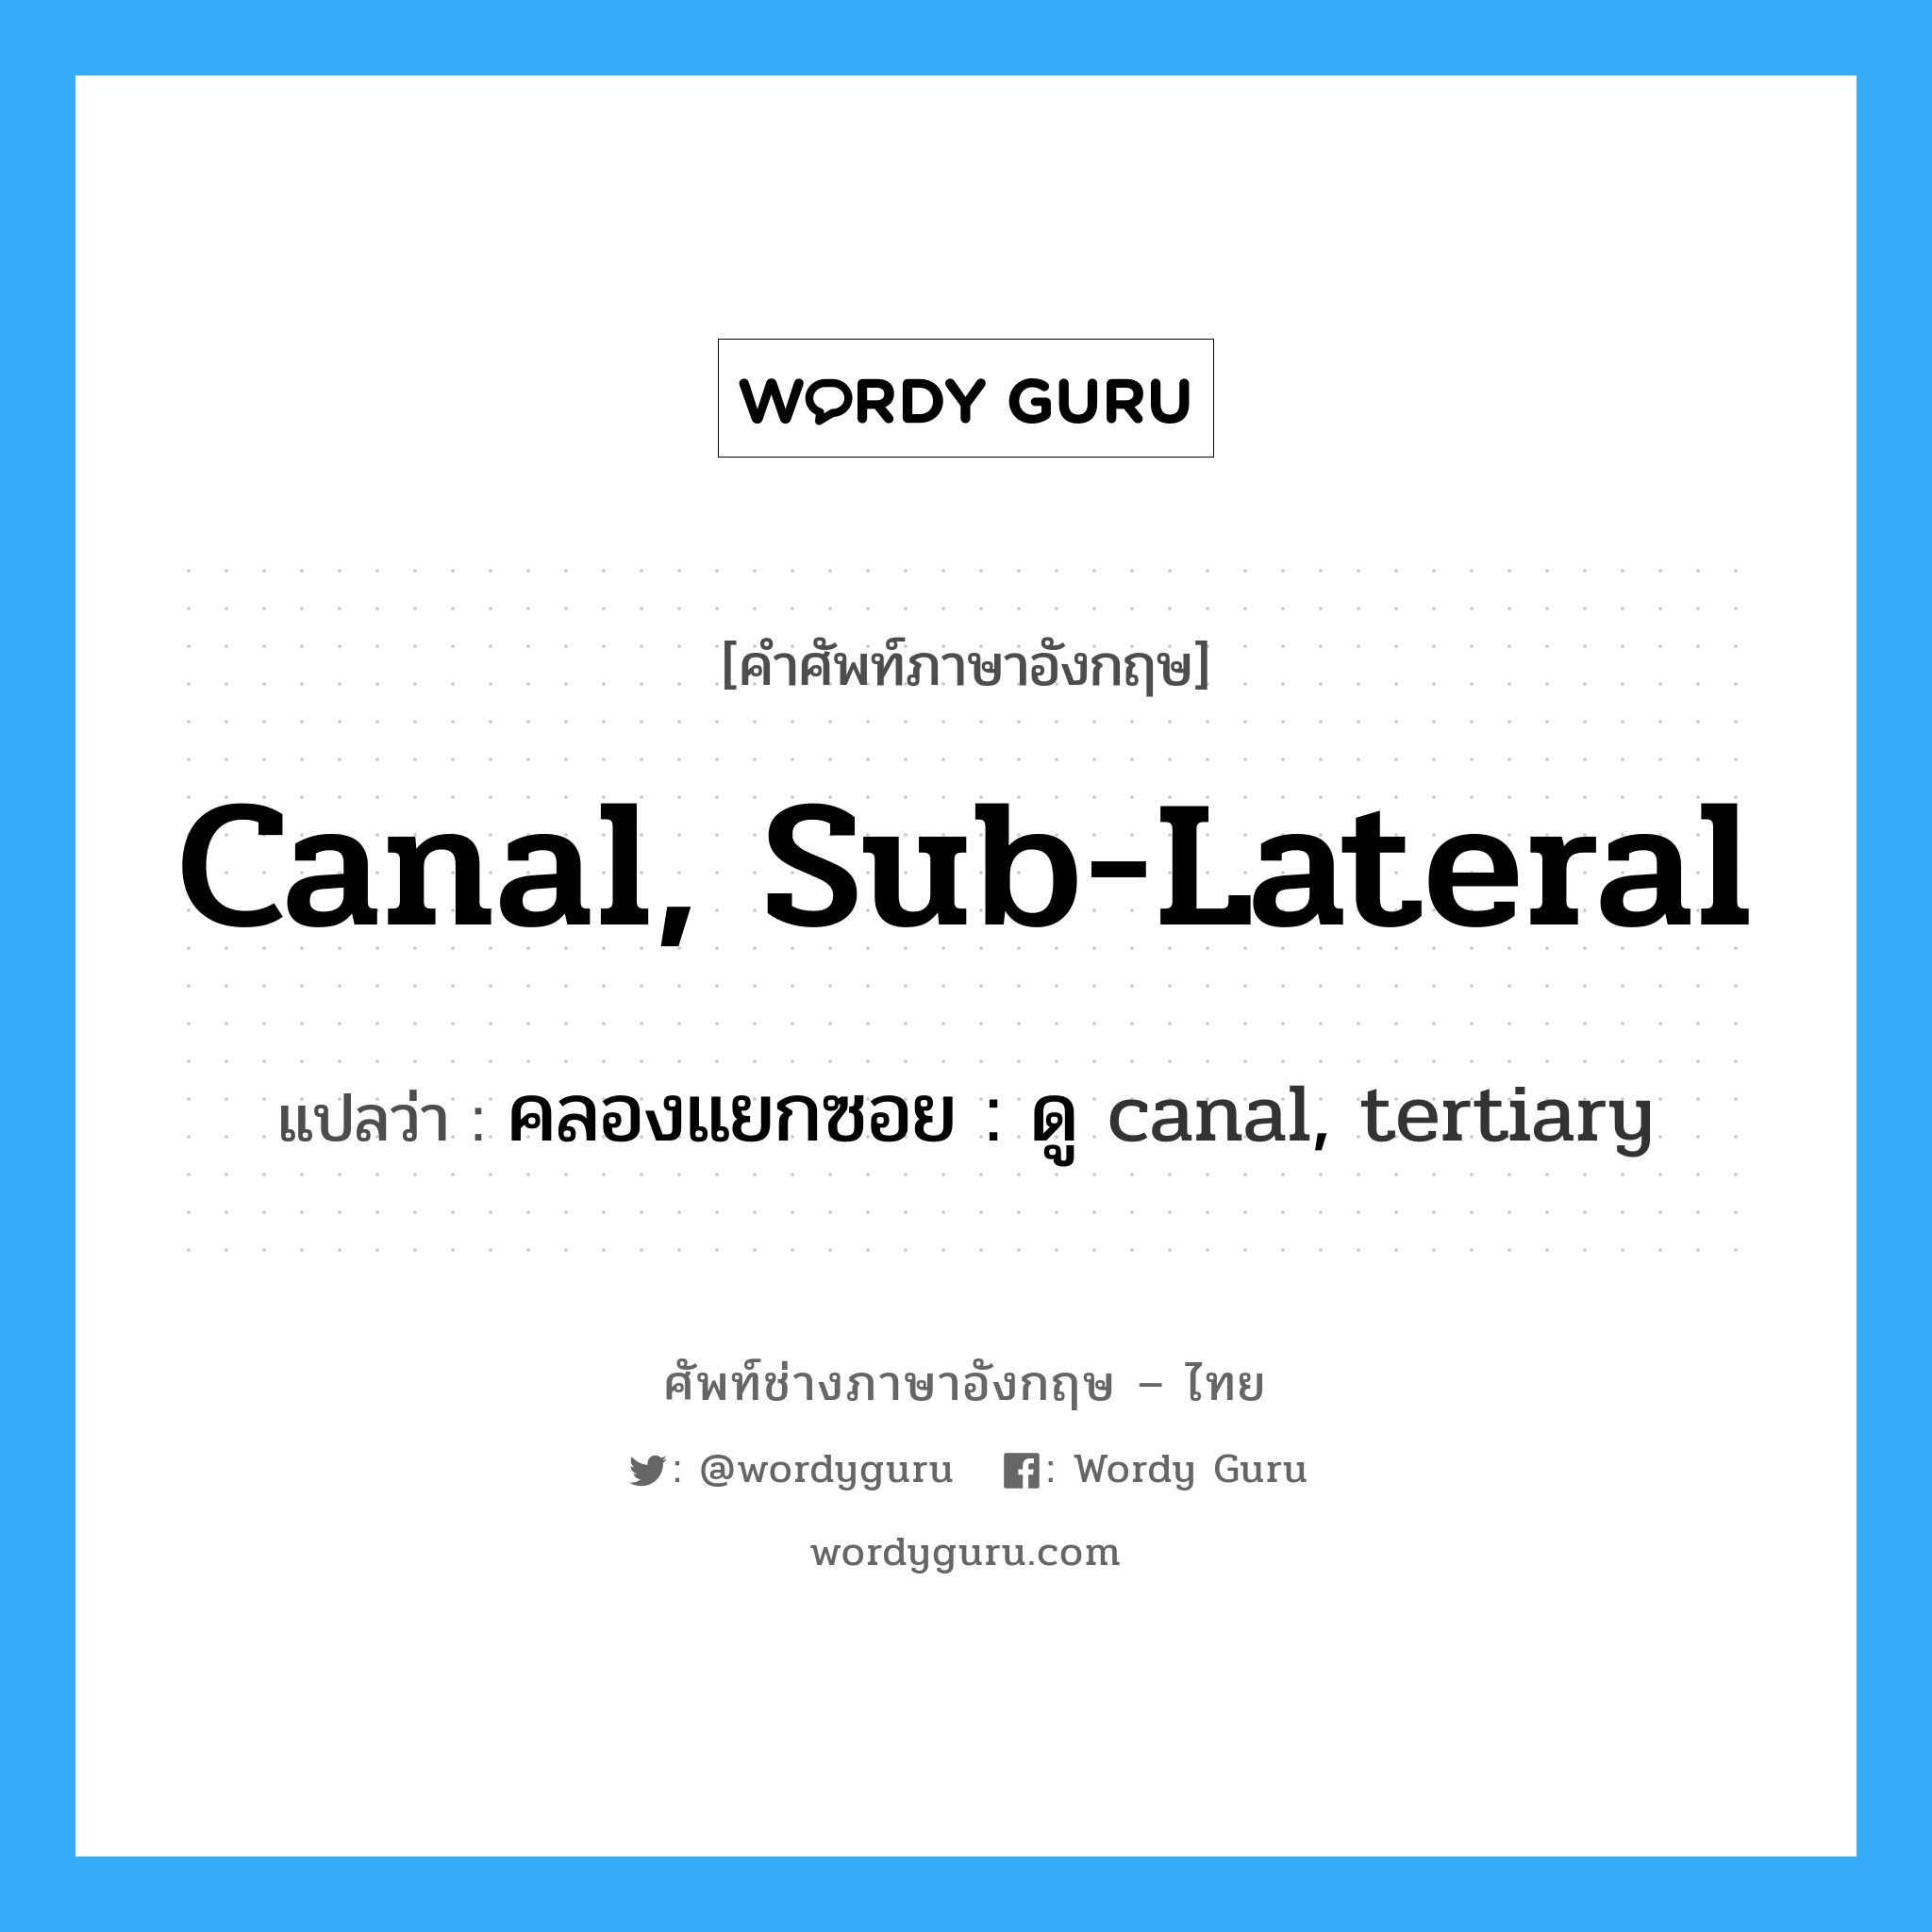 canal, sub-lateral แปลว่า?, คำศัพท์ช่างภาษาอังกฤษ - ไทย canal, sub-lateral คำศัพท์ภาษาอังกฤษ canal, sub-lateral แปลว่า คลองแยกซอย : ดู canal, tertiary